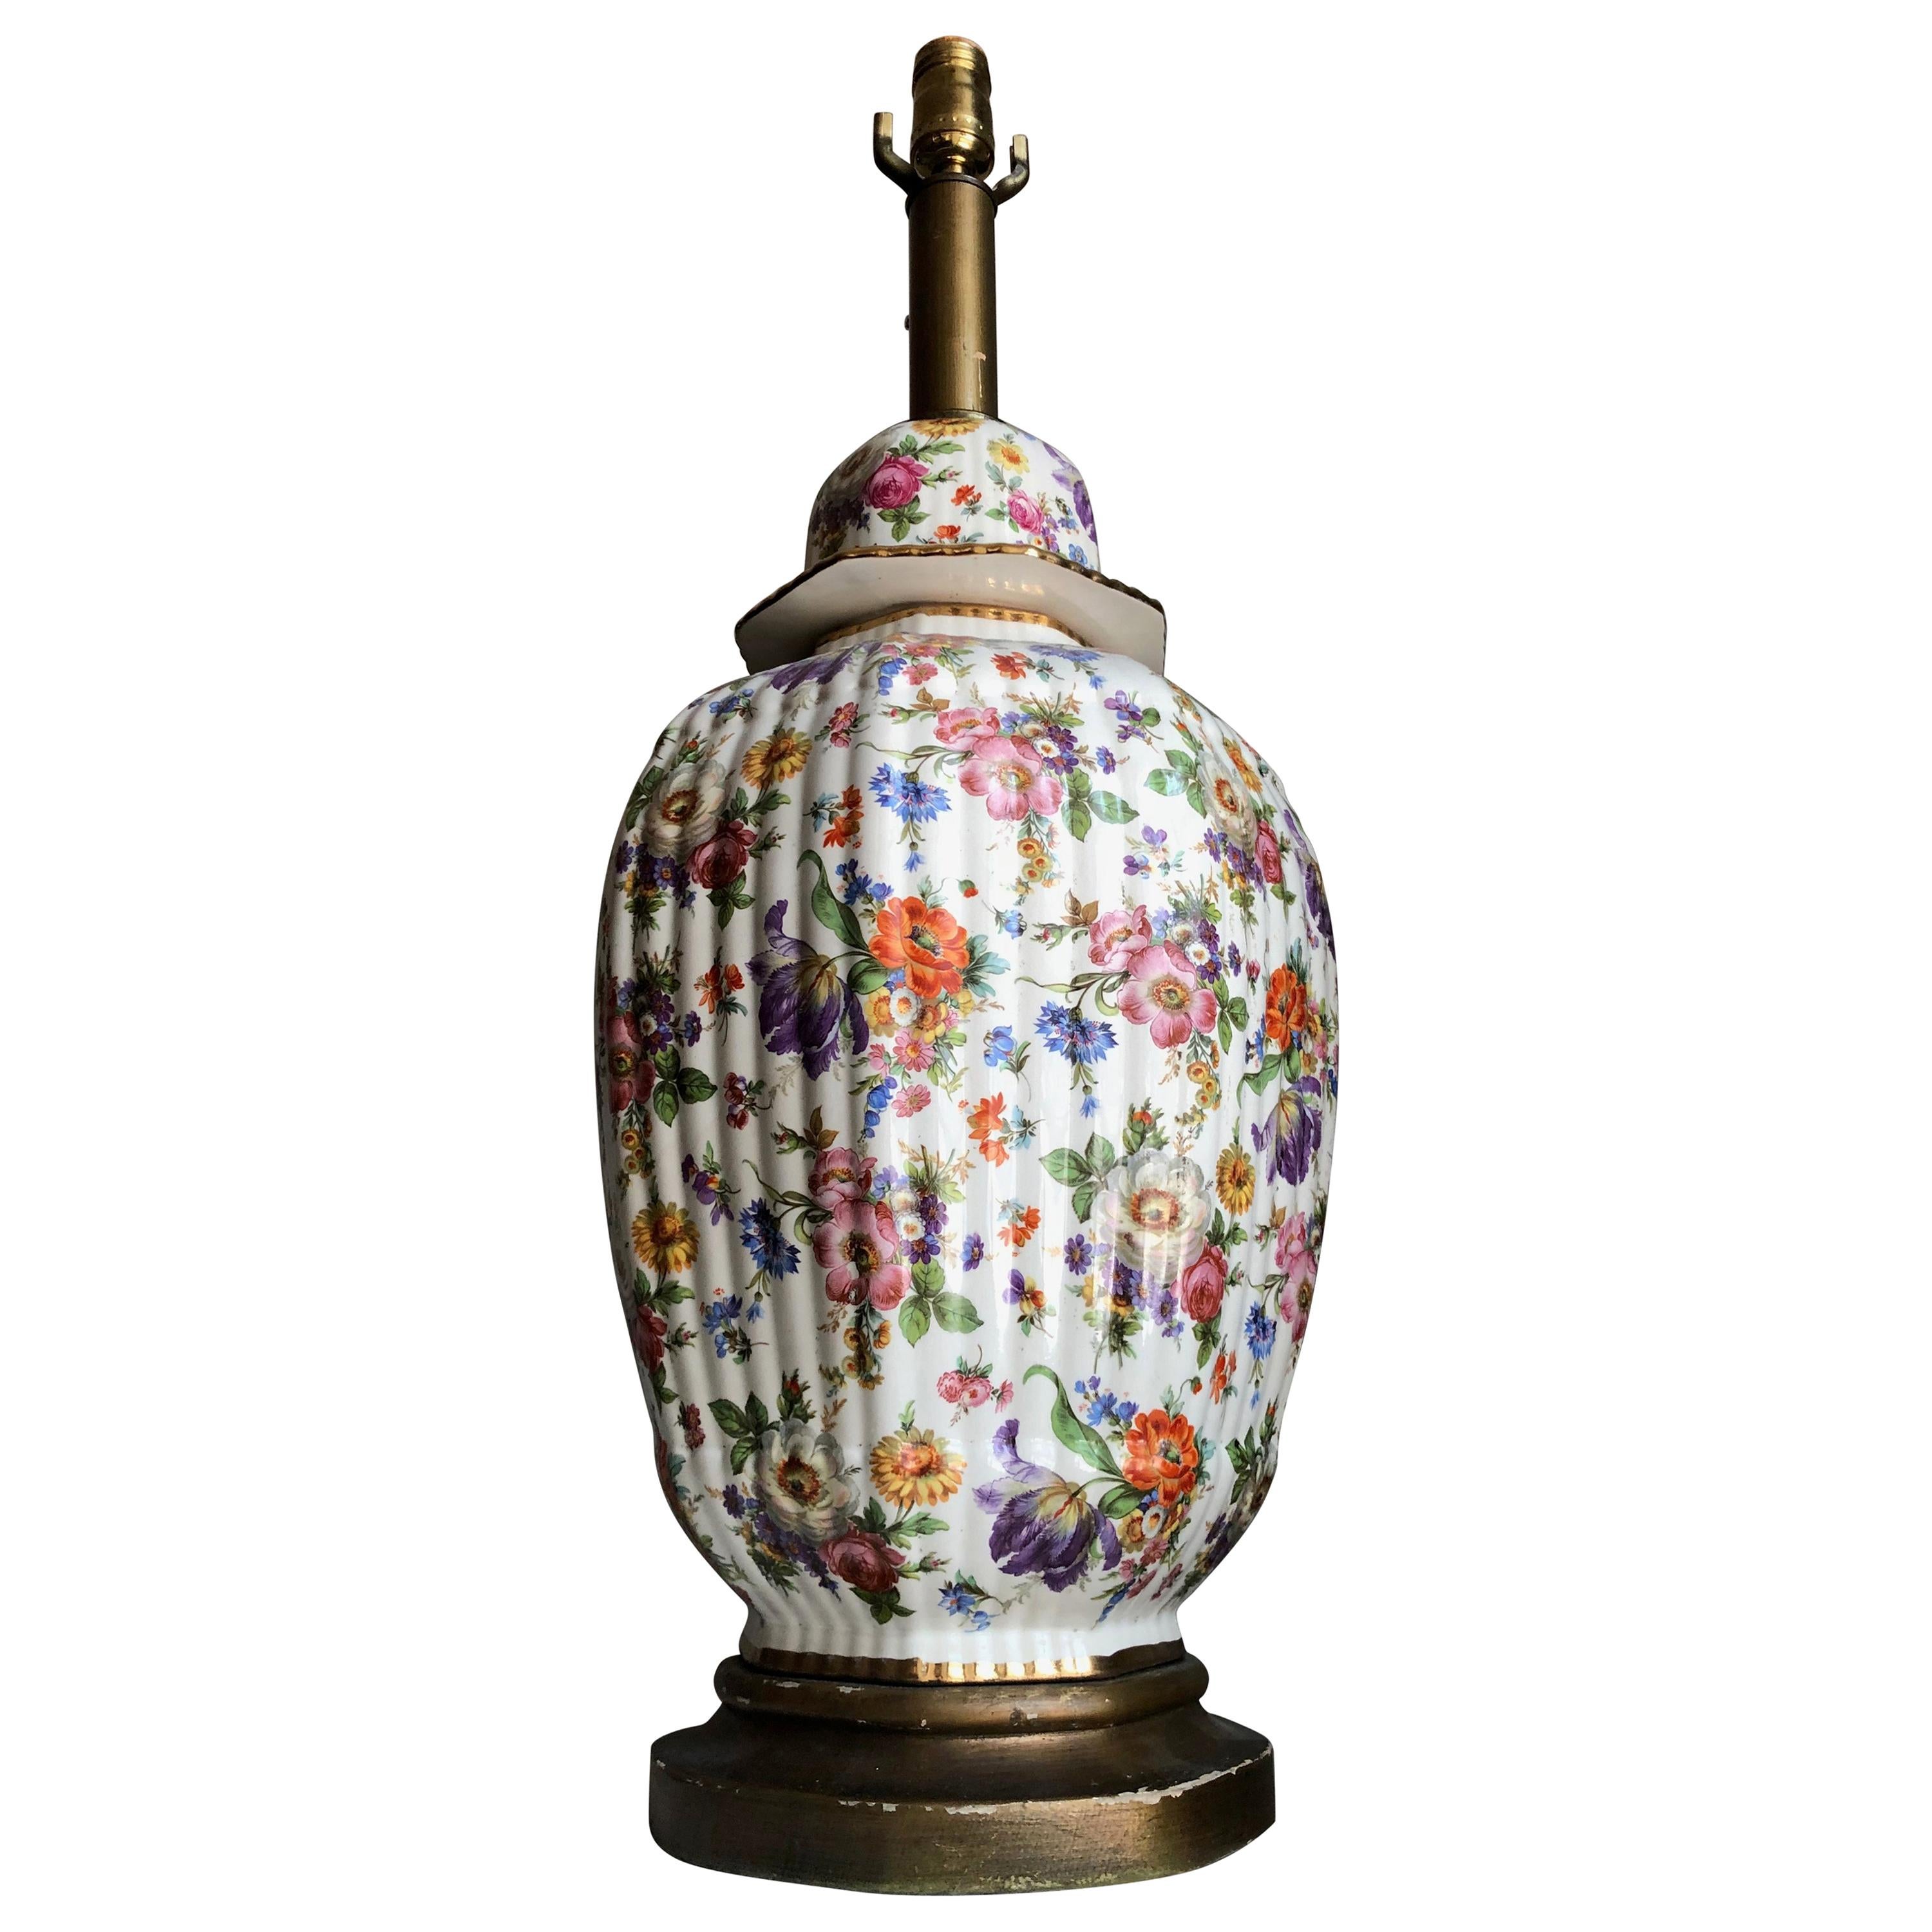 Prächtige und monumentale vergoldete Hand gemalt floral Porzellan Chinoiserie Ingwer Glas verdrahtet als Lampe. Schöner Maßstab und schöne Proportionen. Genialer Einsatz von Farbe.